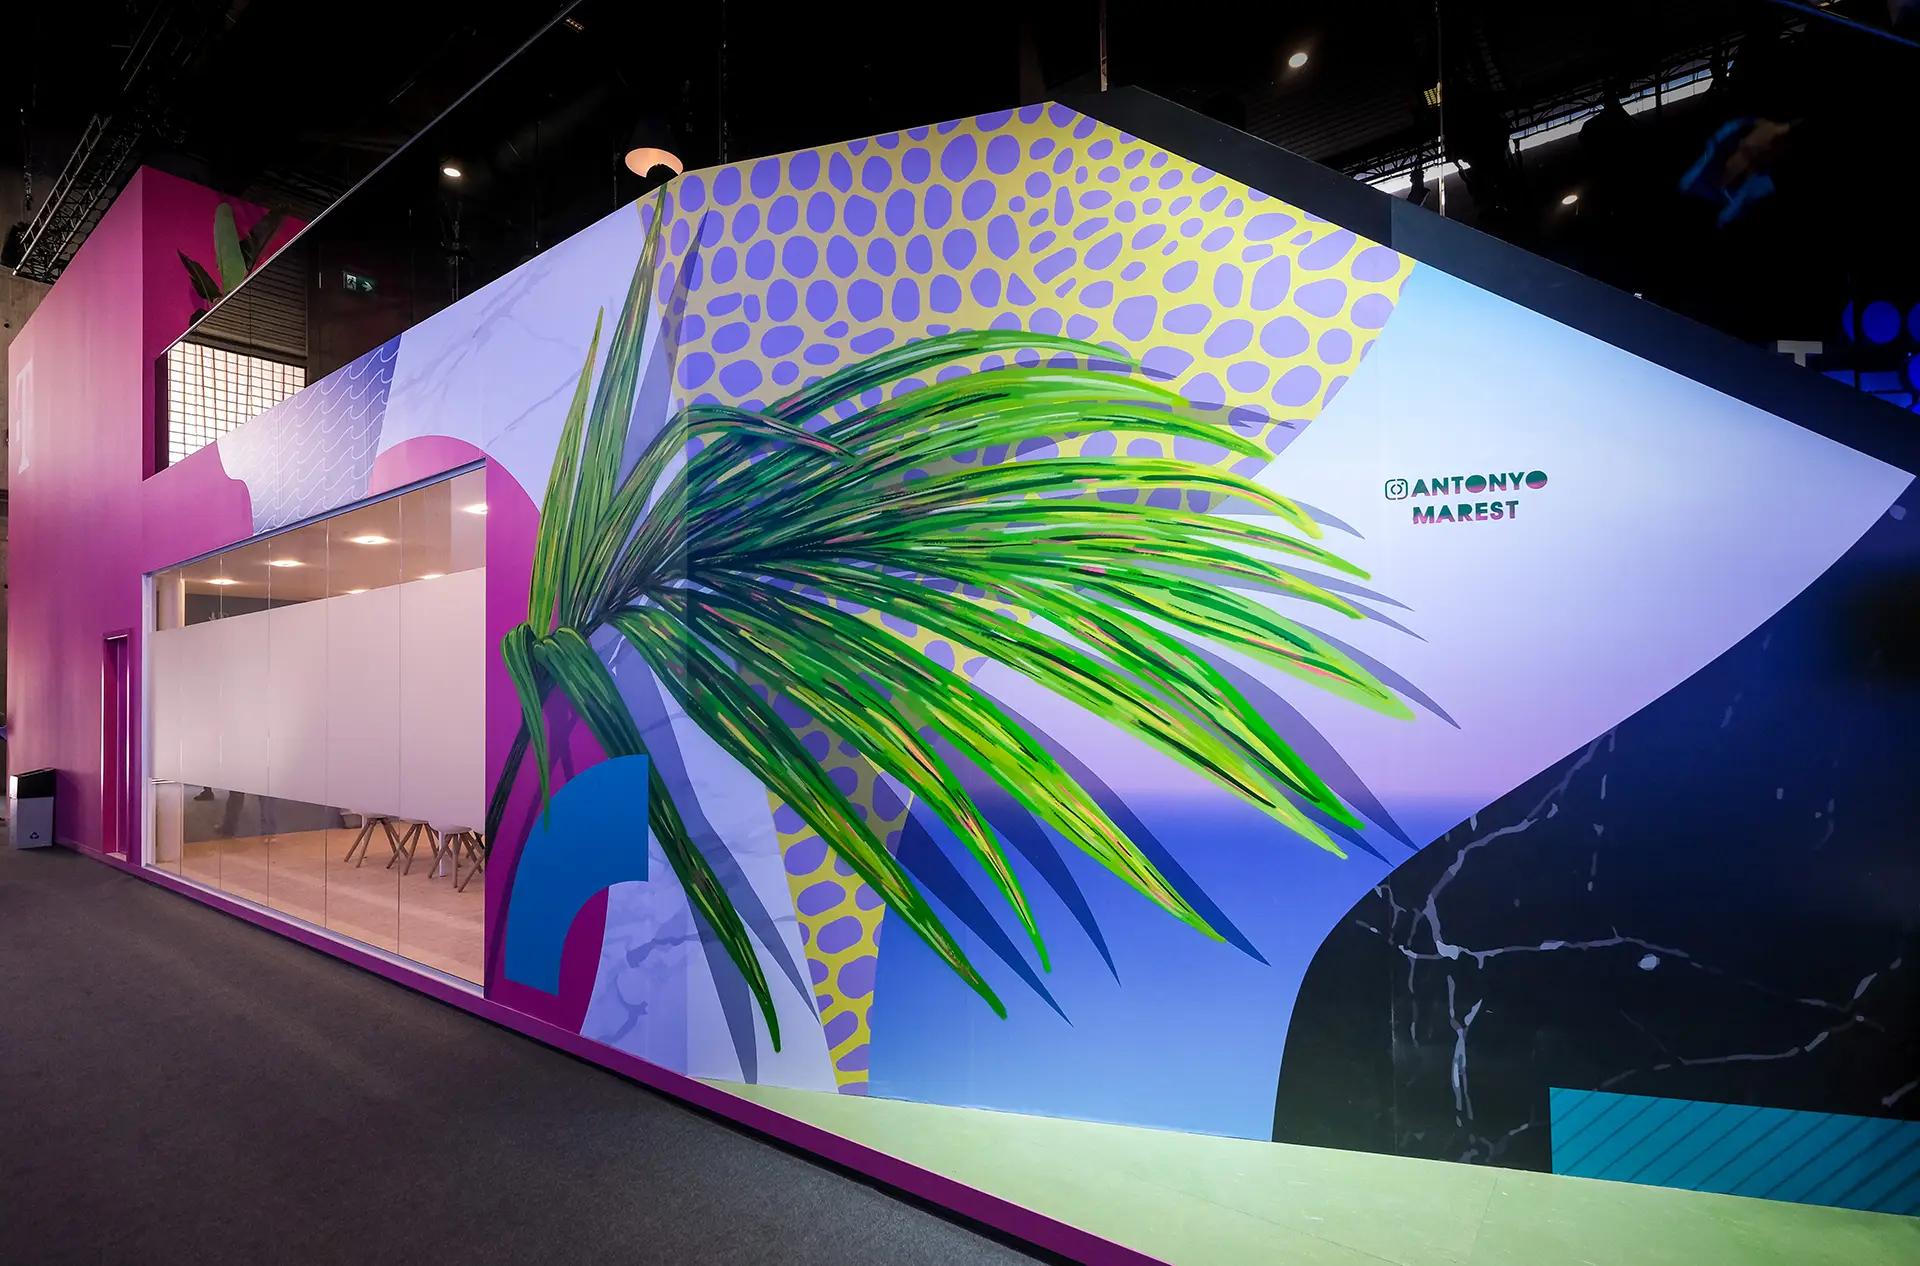 Deutsche Telekom at MWC 2022 – Art with Antonyo Marest